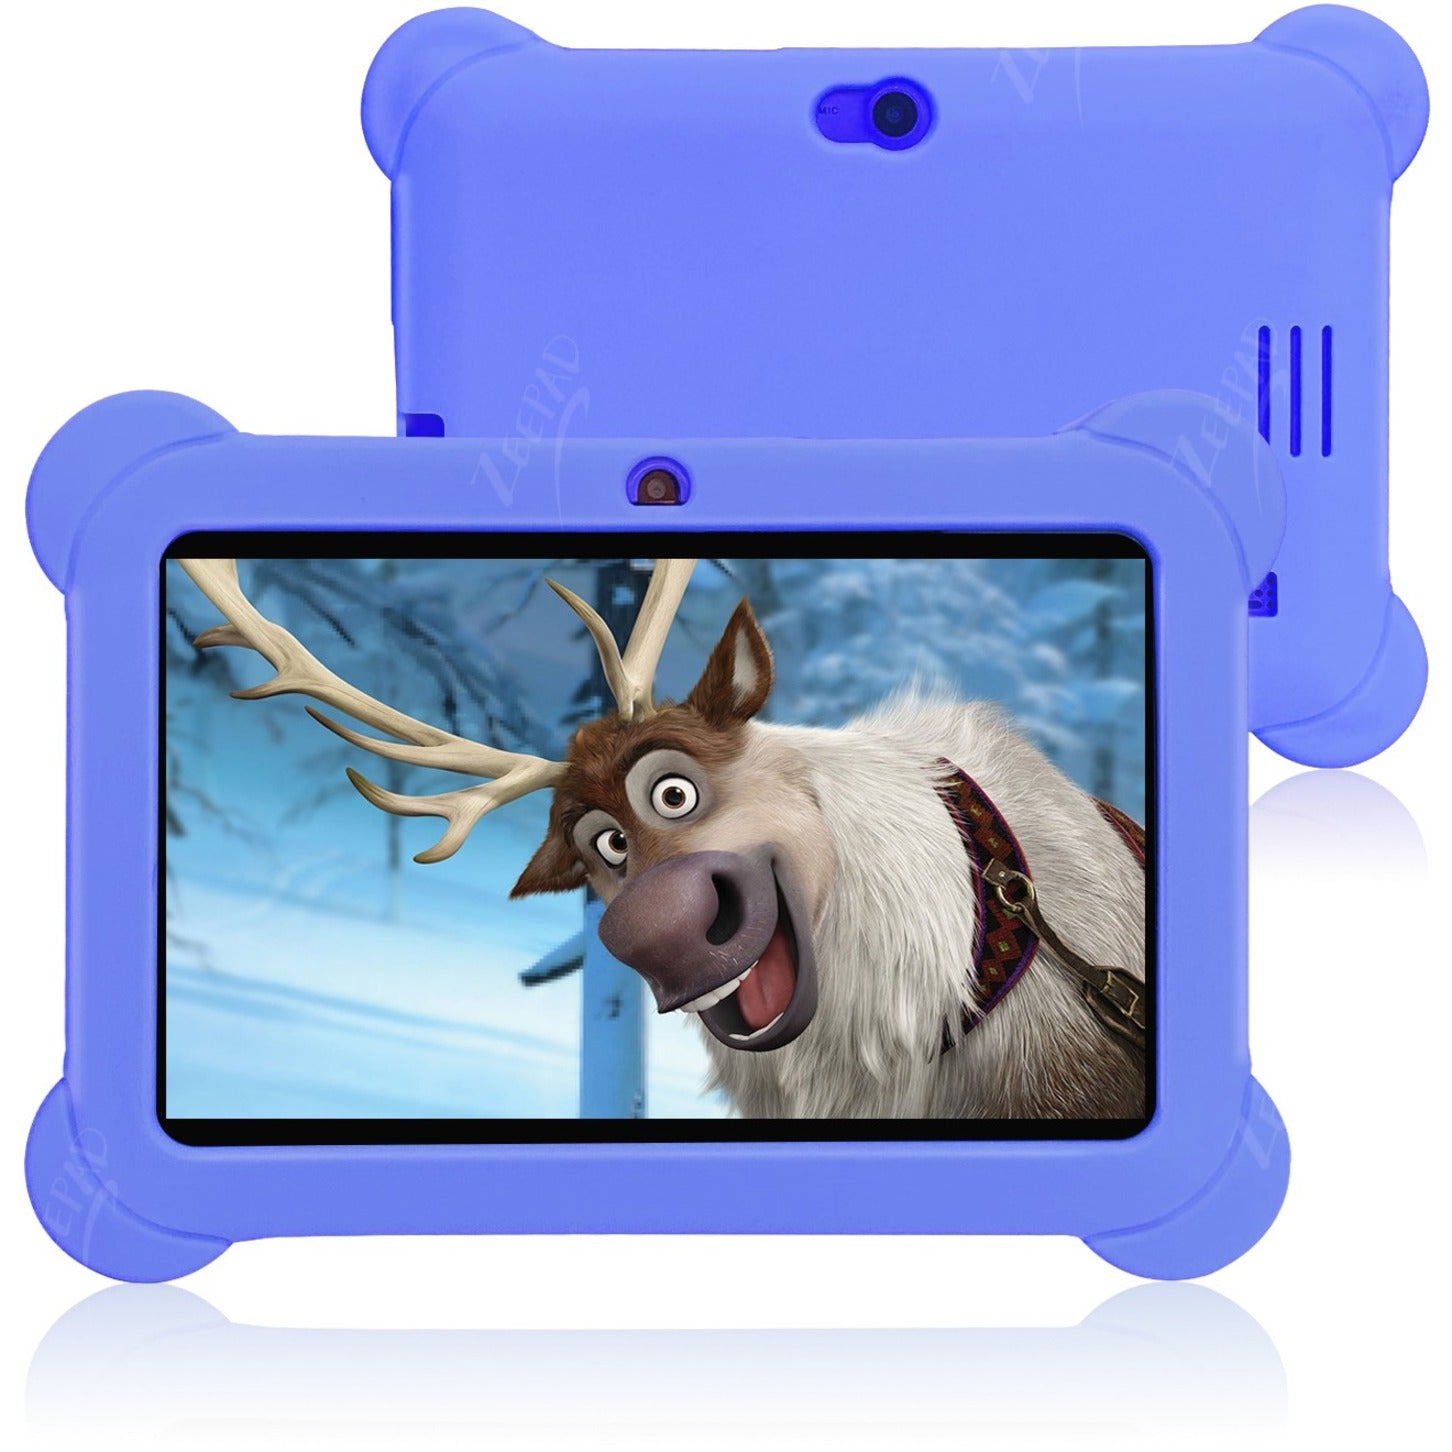 Zeepad ZEE16GBLU Kids Tablet, 7" Screen, Quad-core, 1GB RAM, 16GB Flash Memory, Android 4.4 KitKat, Blue